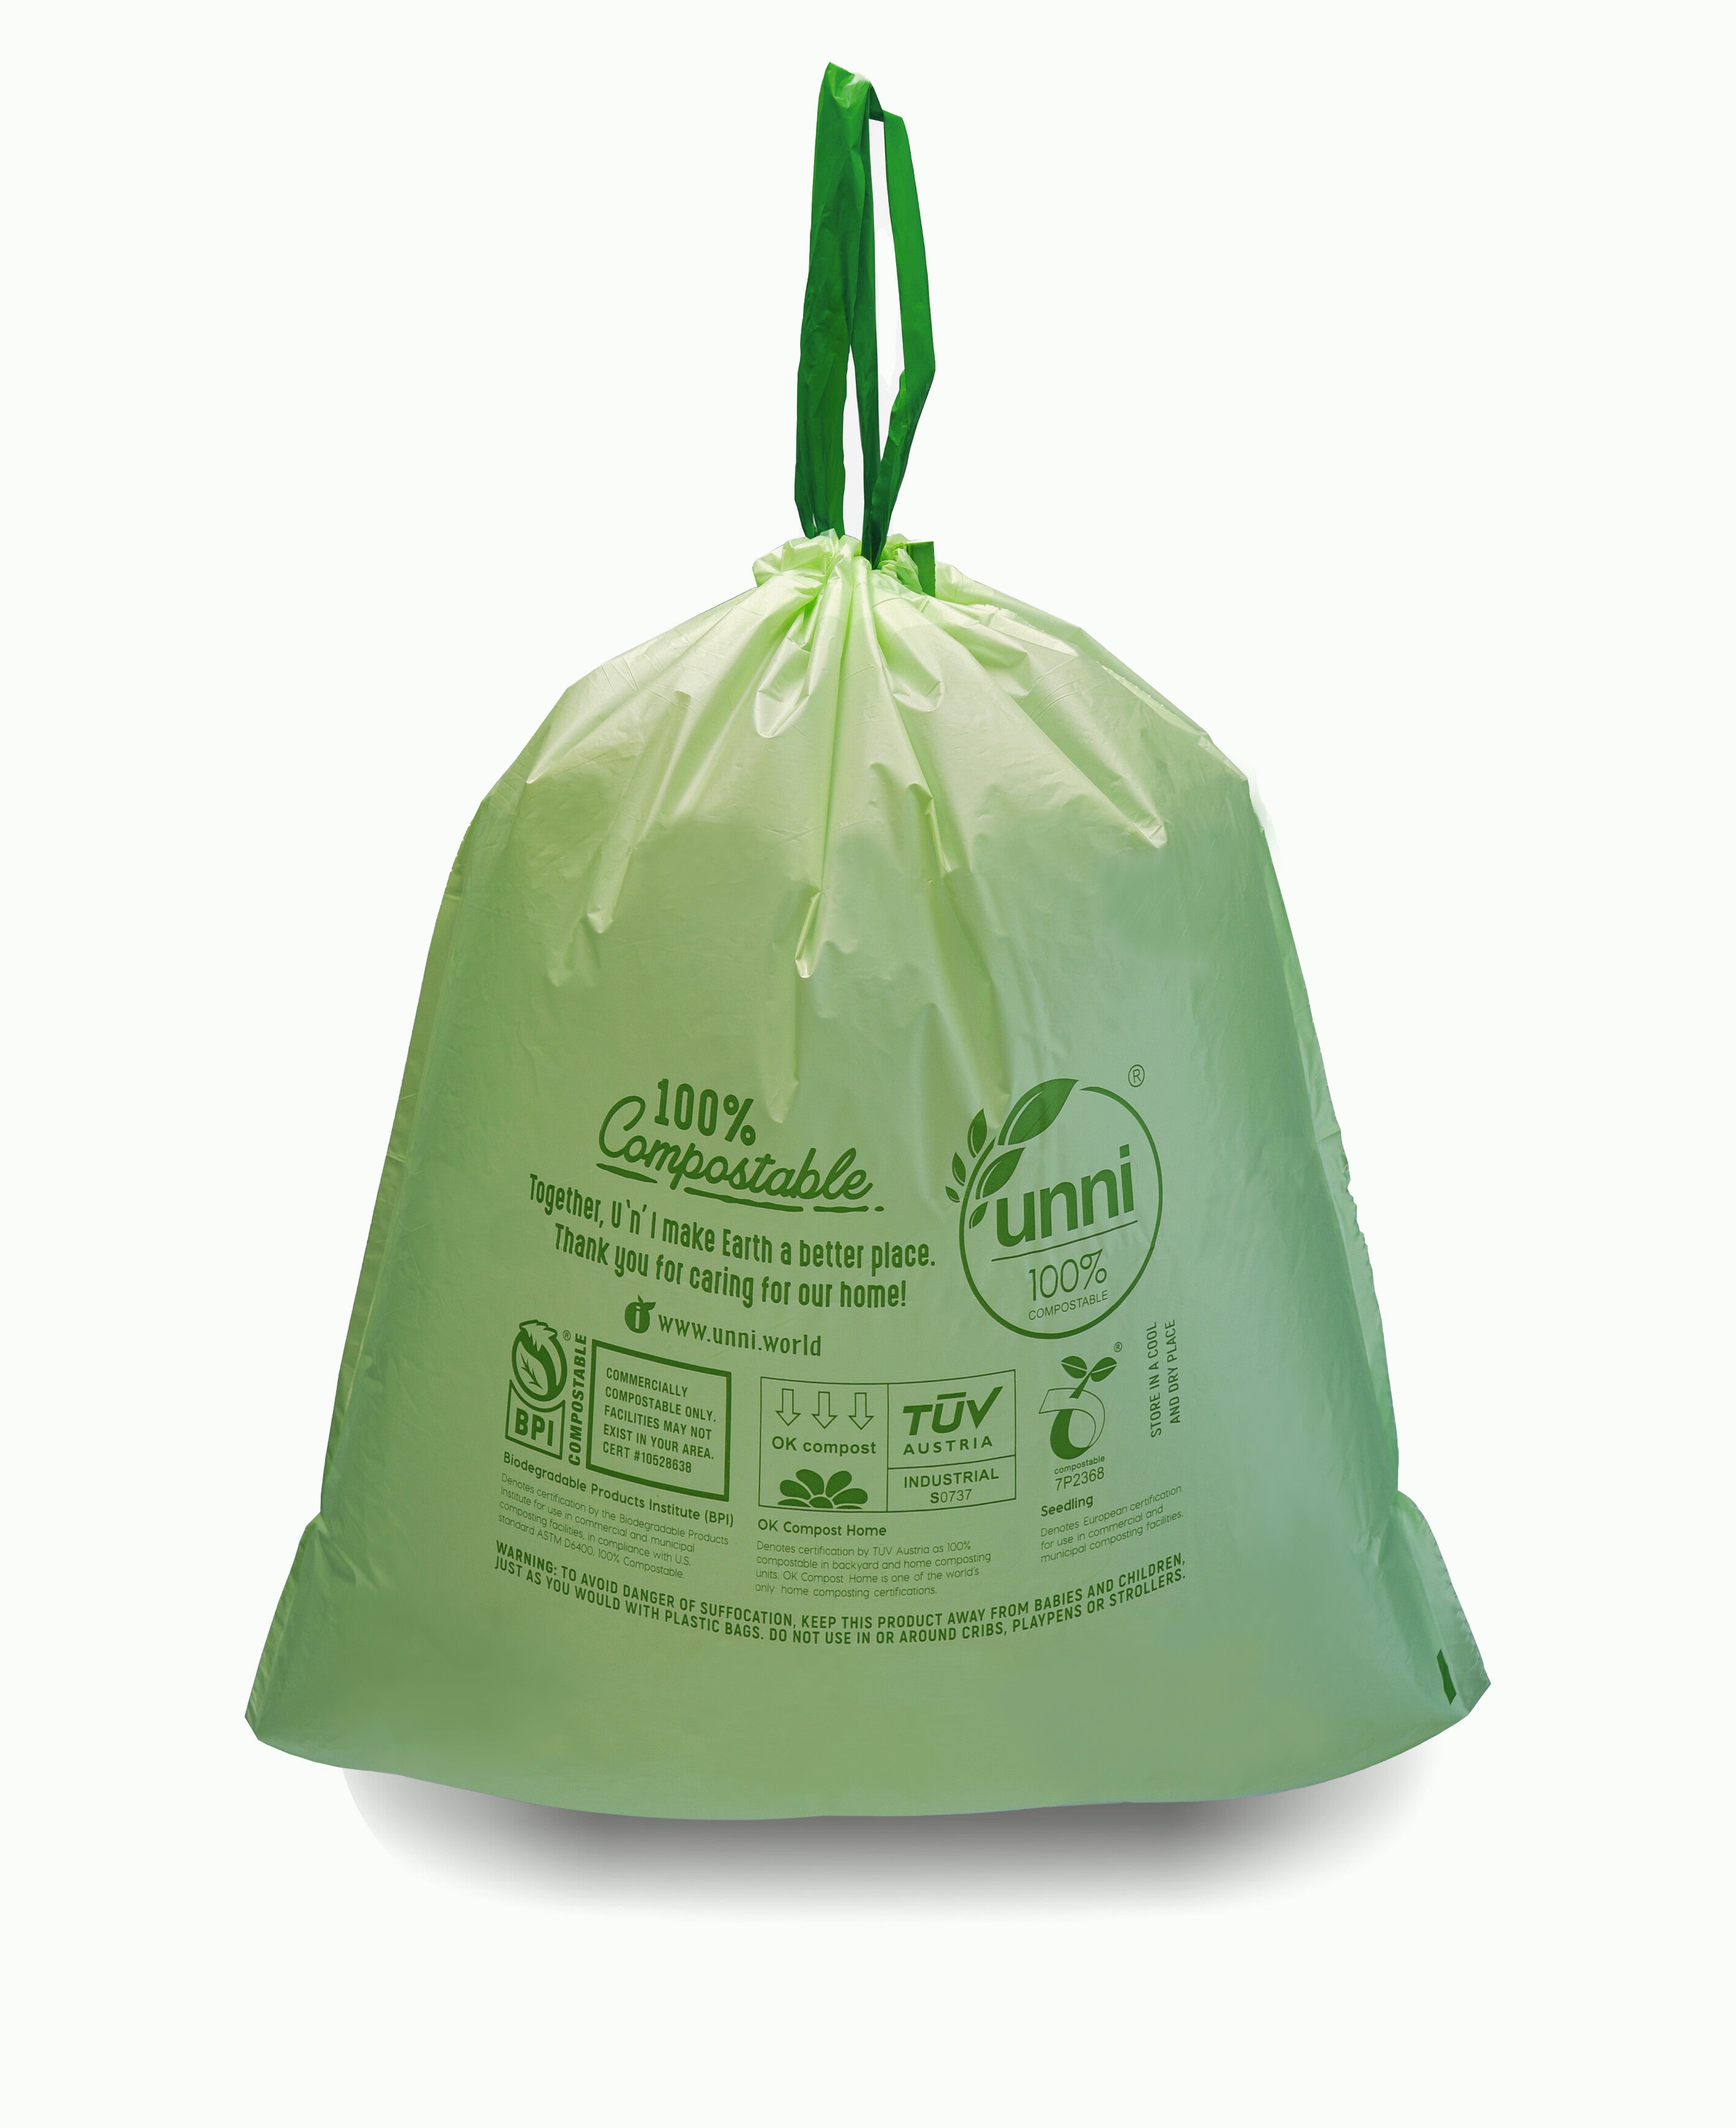 2 Gallon Trash Bags, AYOTEE Biodegradable Strong Drawstring 2.6